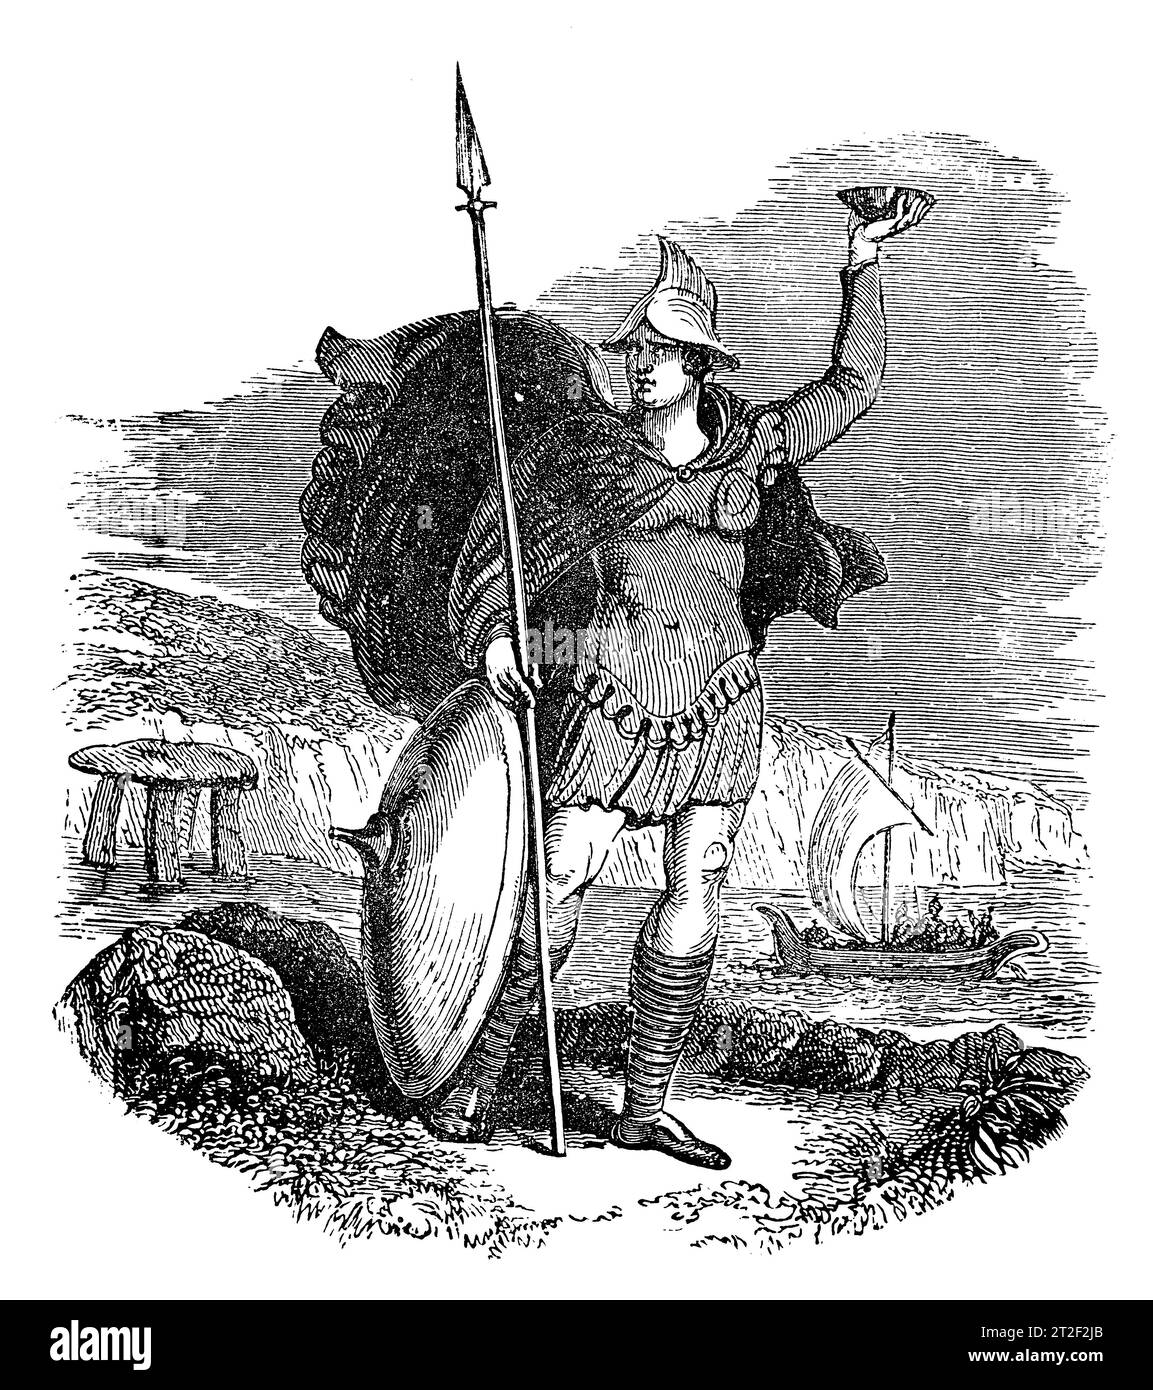 Armi e Cosyume di un capo militare sassone. Black and White Illustration from the 'Old England' pubblicato da James Sangster nel 1860. Foto Stock